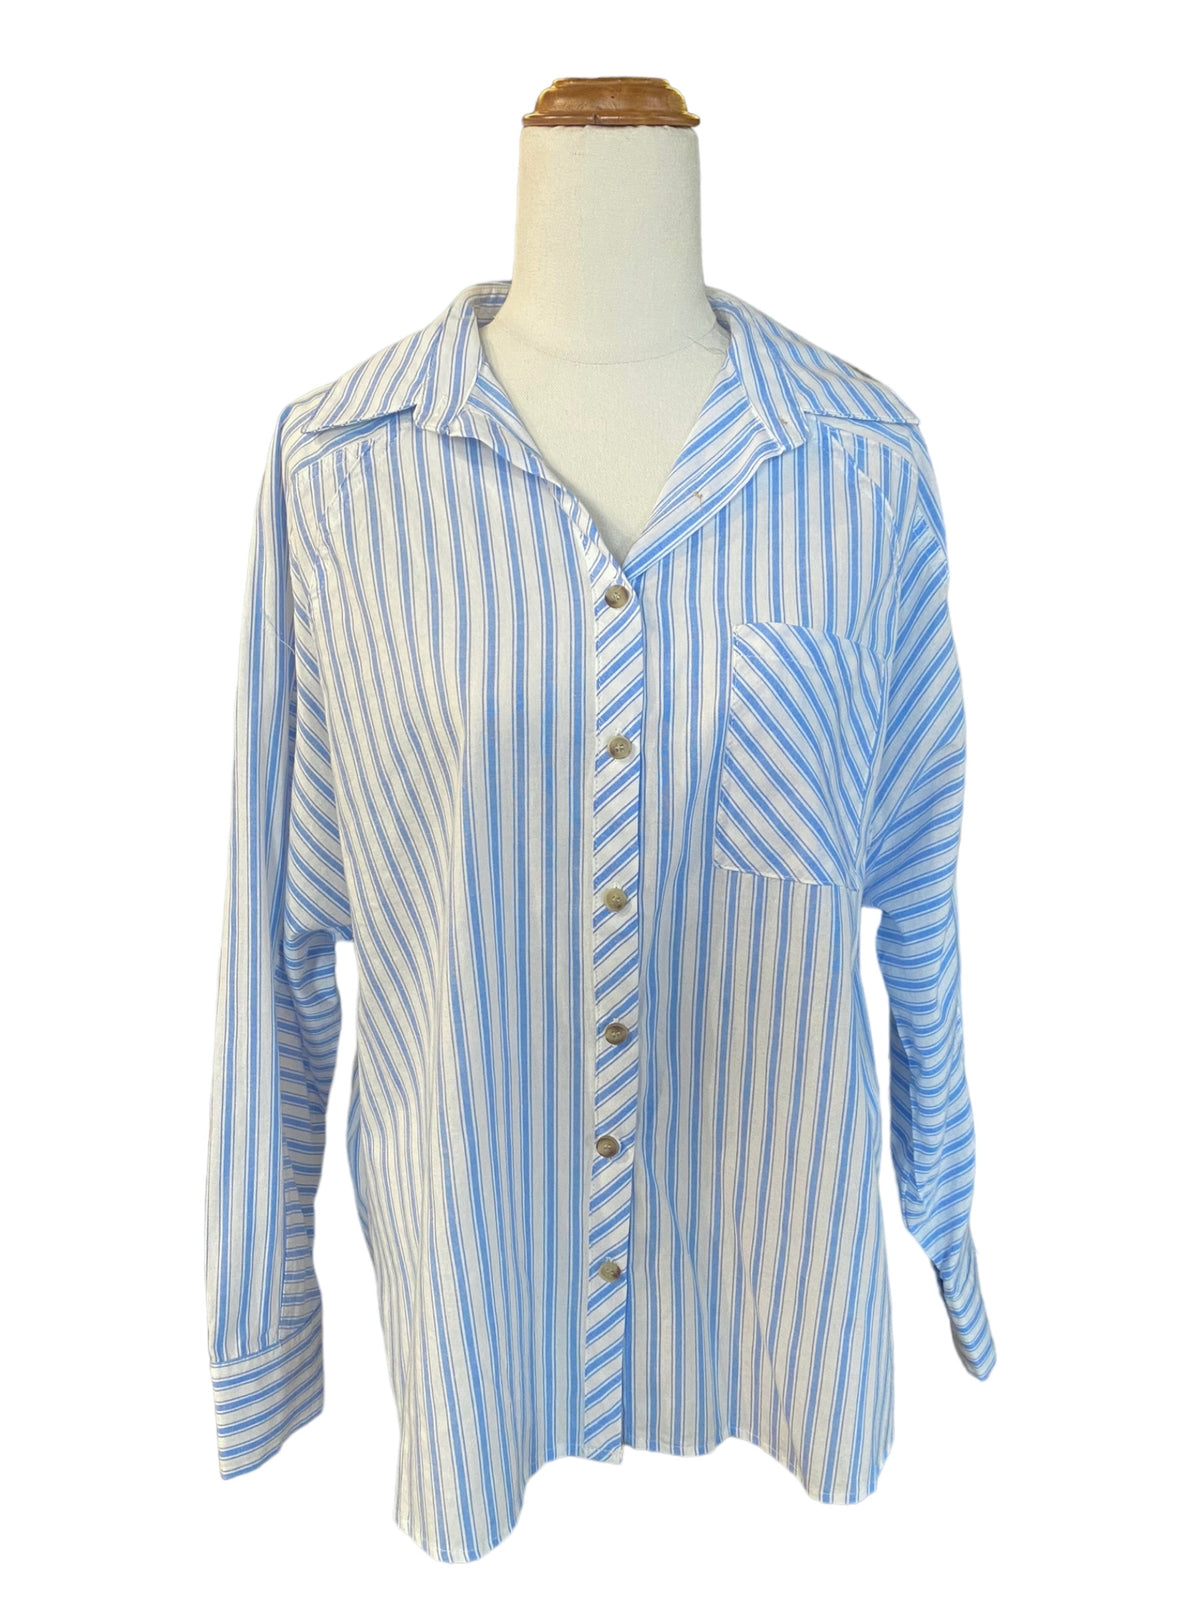 'Elly' Stripe Shirt - Blue